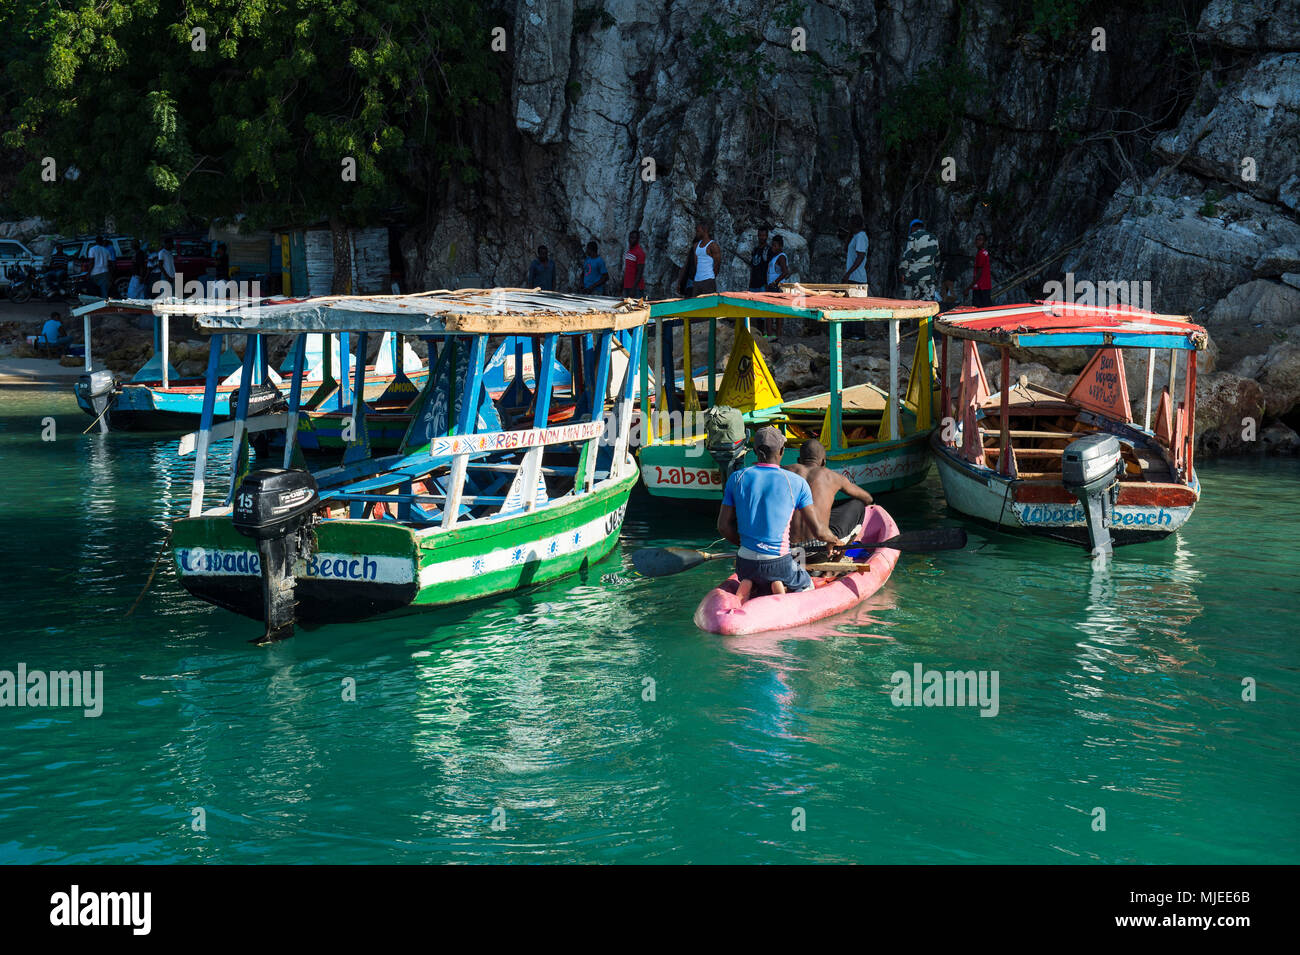 Des bateaux de tourisme local, Labadie, Cap-Haïtien, Haïti, Caraïbes Banque D'Images